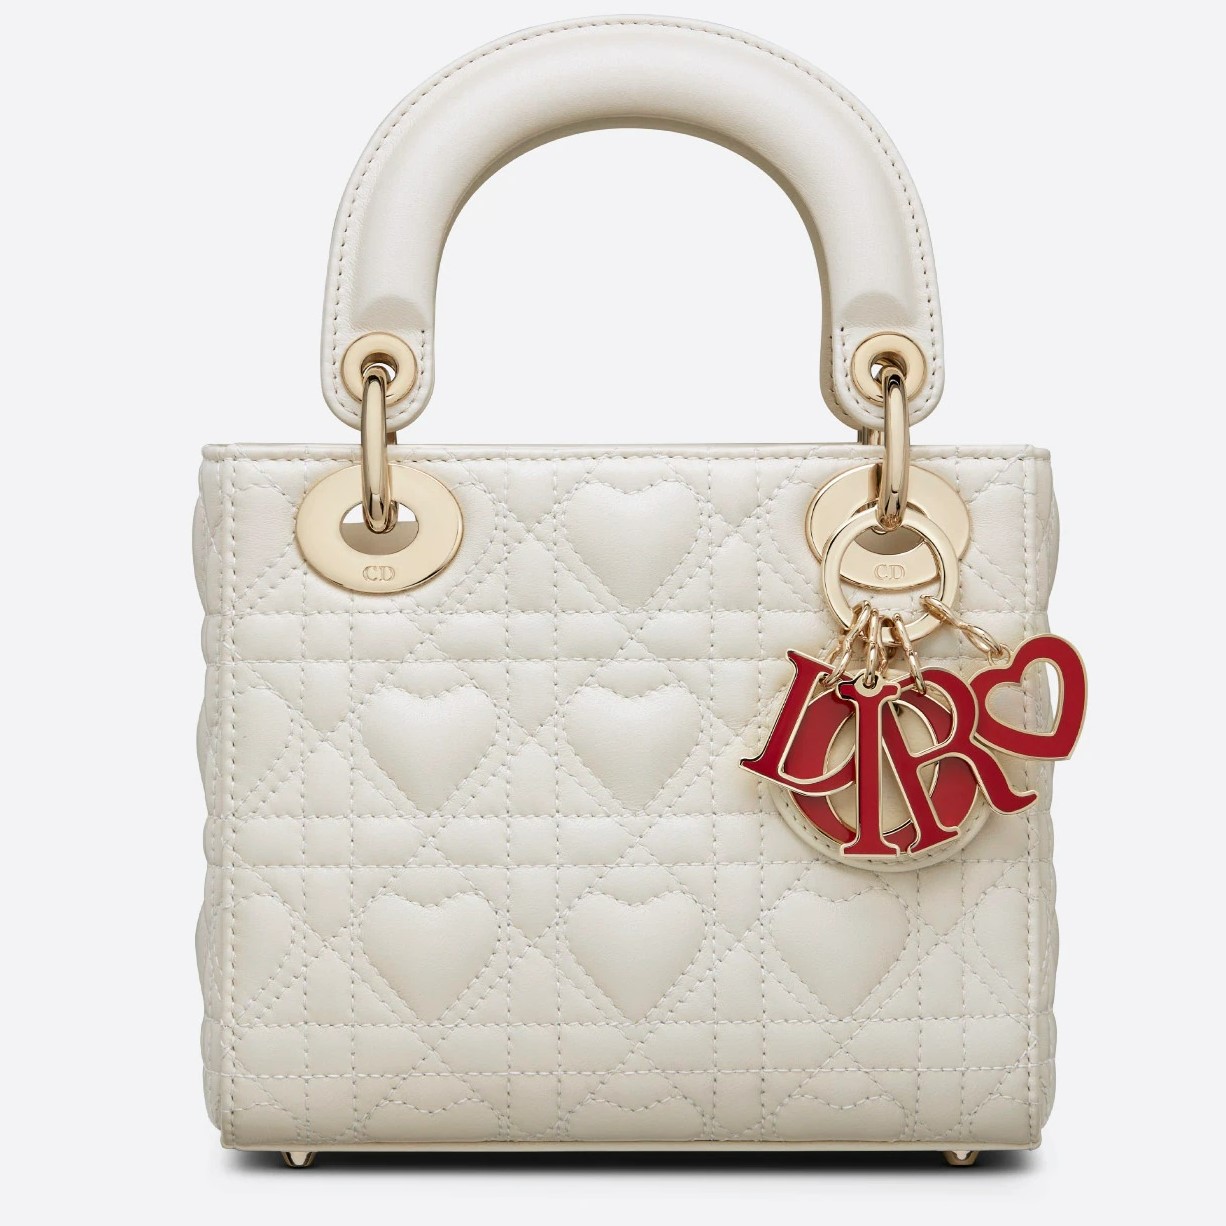 Túi xách nữ Dior trái tim mini nhỏ xinh da bò cao cấp 2200k LienFashi   lien fashion